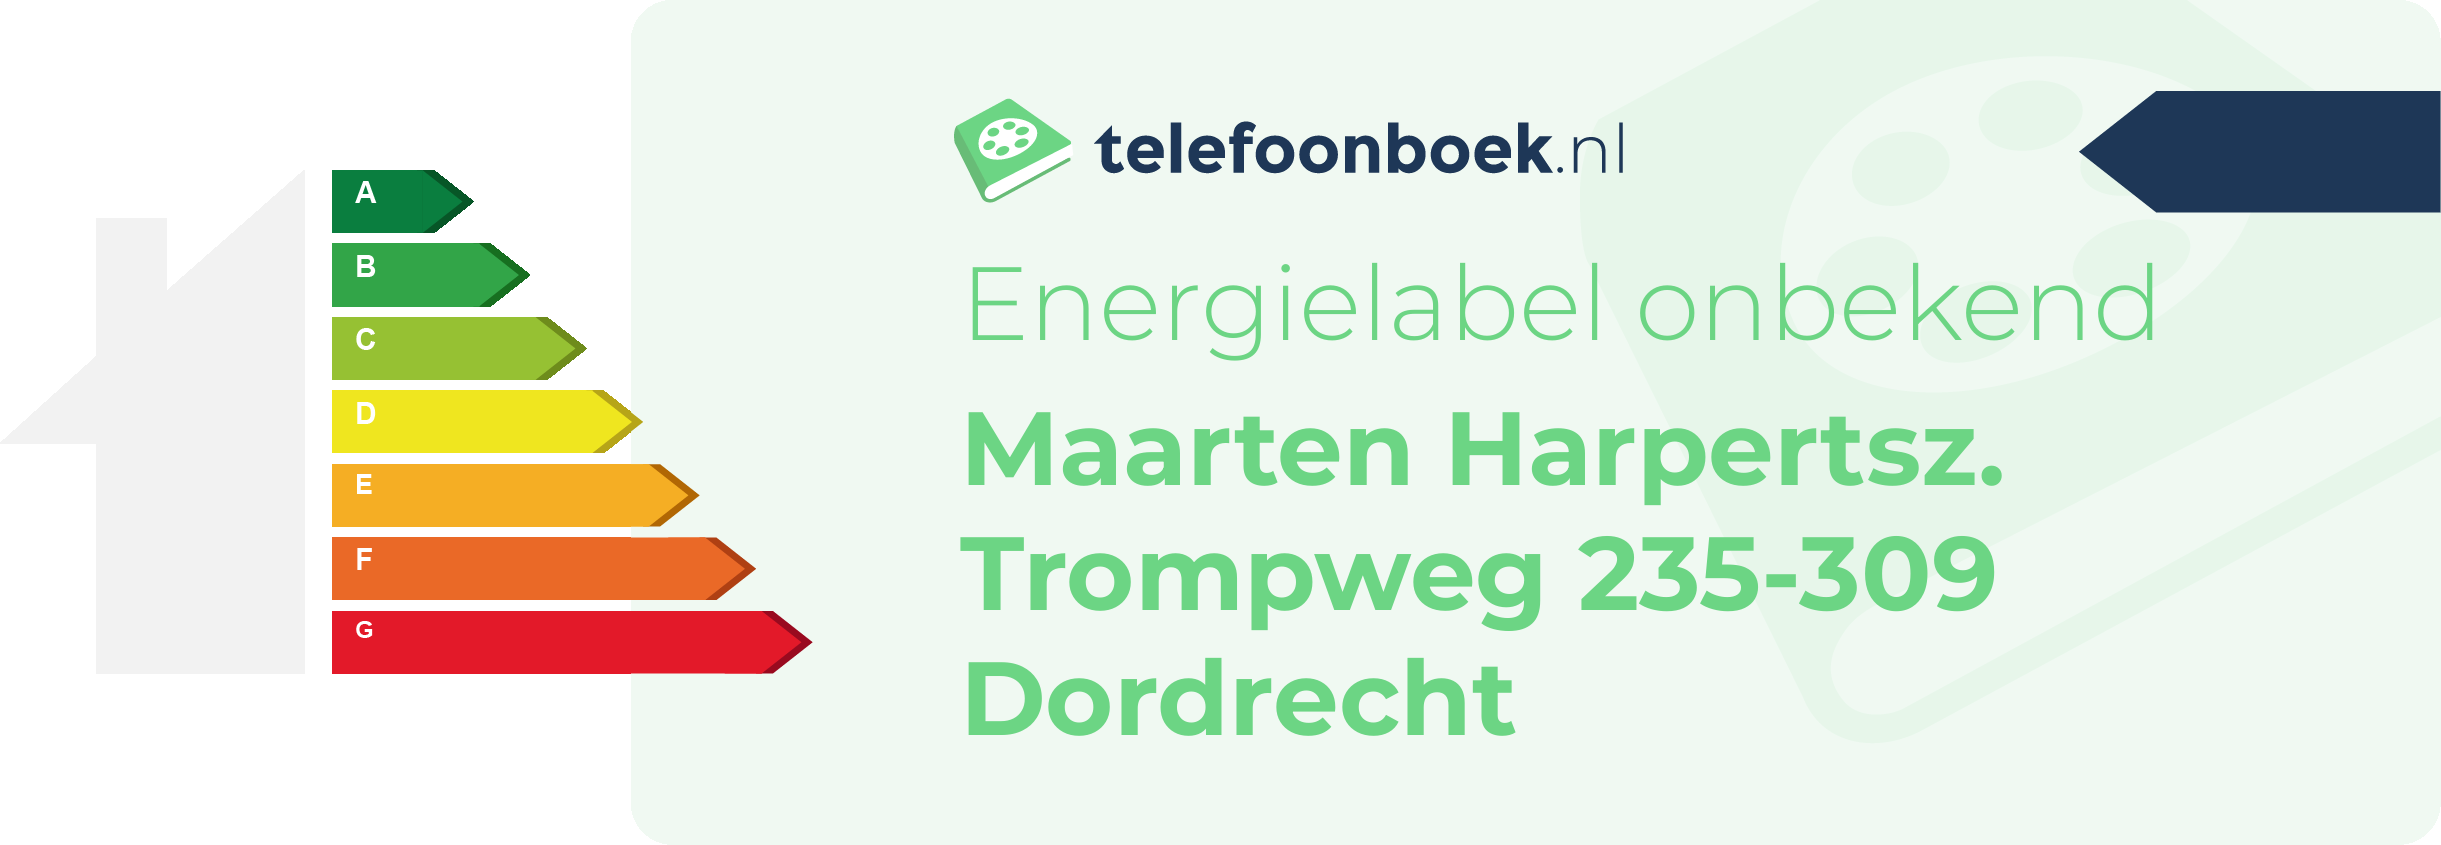 Energielabel Maarten Harpertsz. Trompweg 235-309 Dordrecht